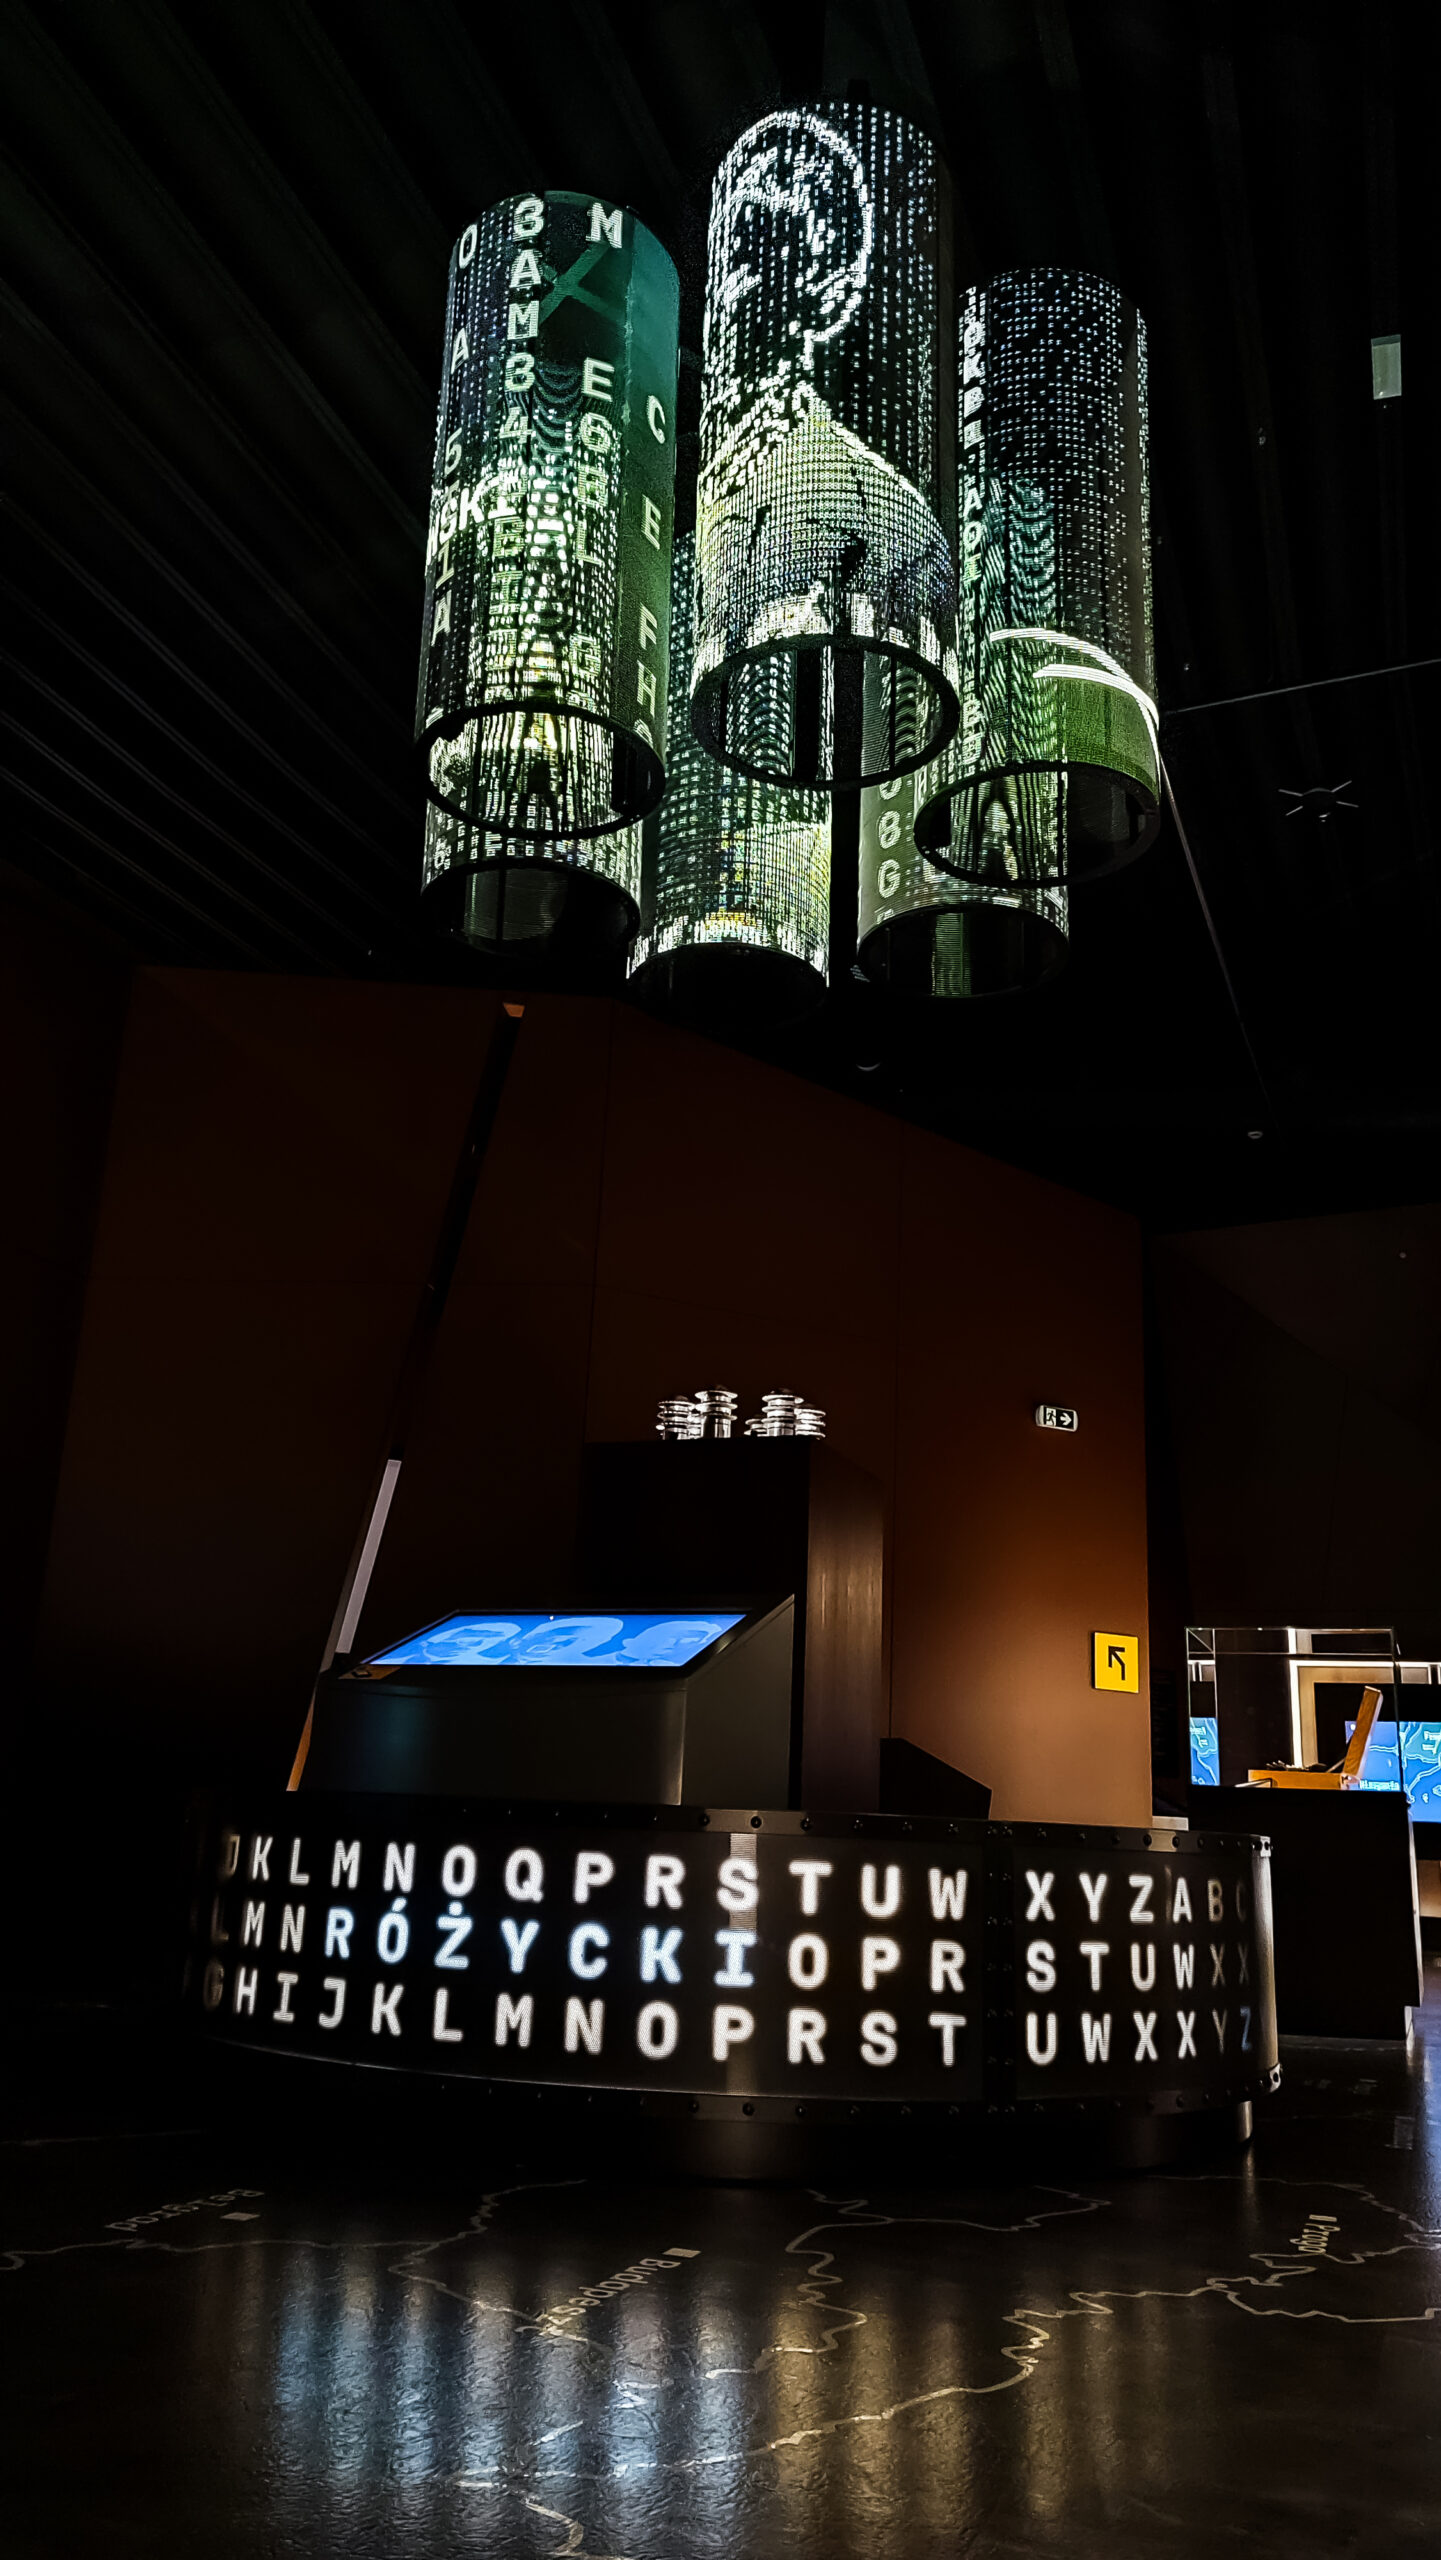 Podwieszane ekrany LedLIGHT w formie transparentnych cylindrów umieszone w Centrum Szyfrów Enigma w Poznaniu